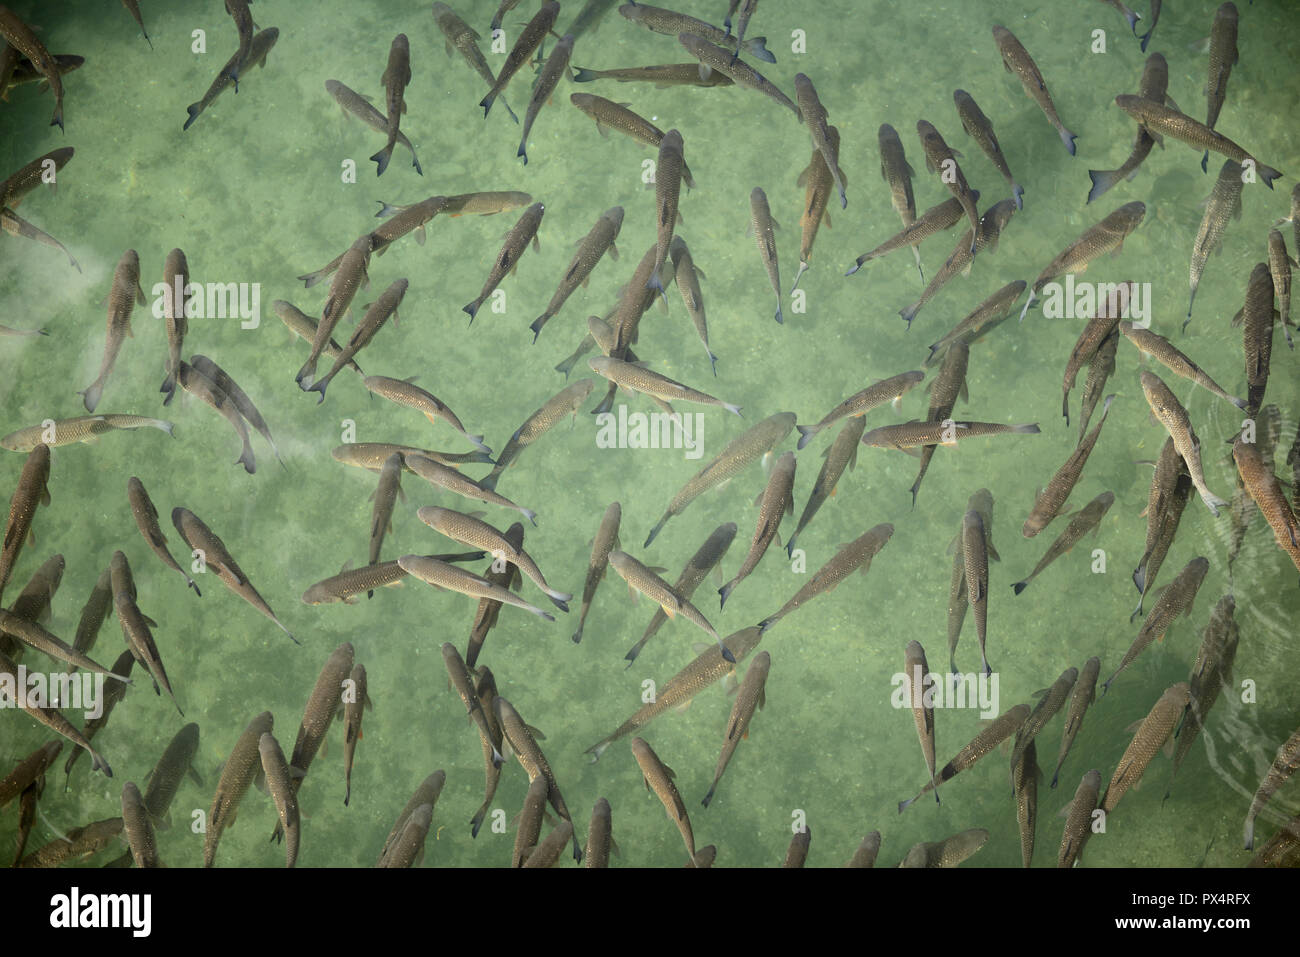 Fish in Rhine river near Rhinefalls, Switzerland Stock Photo